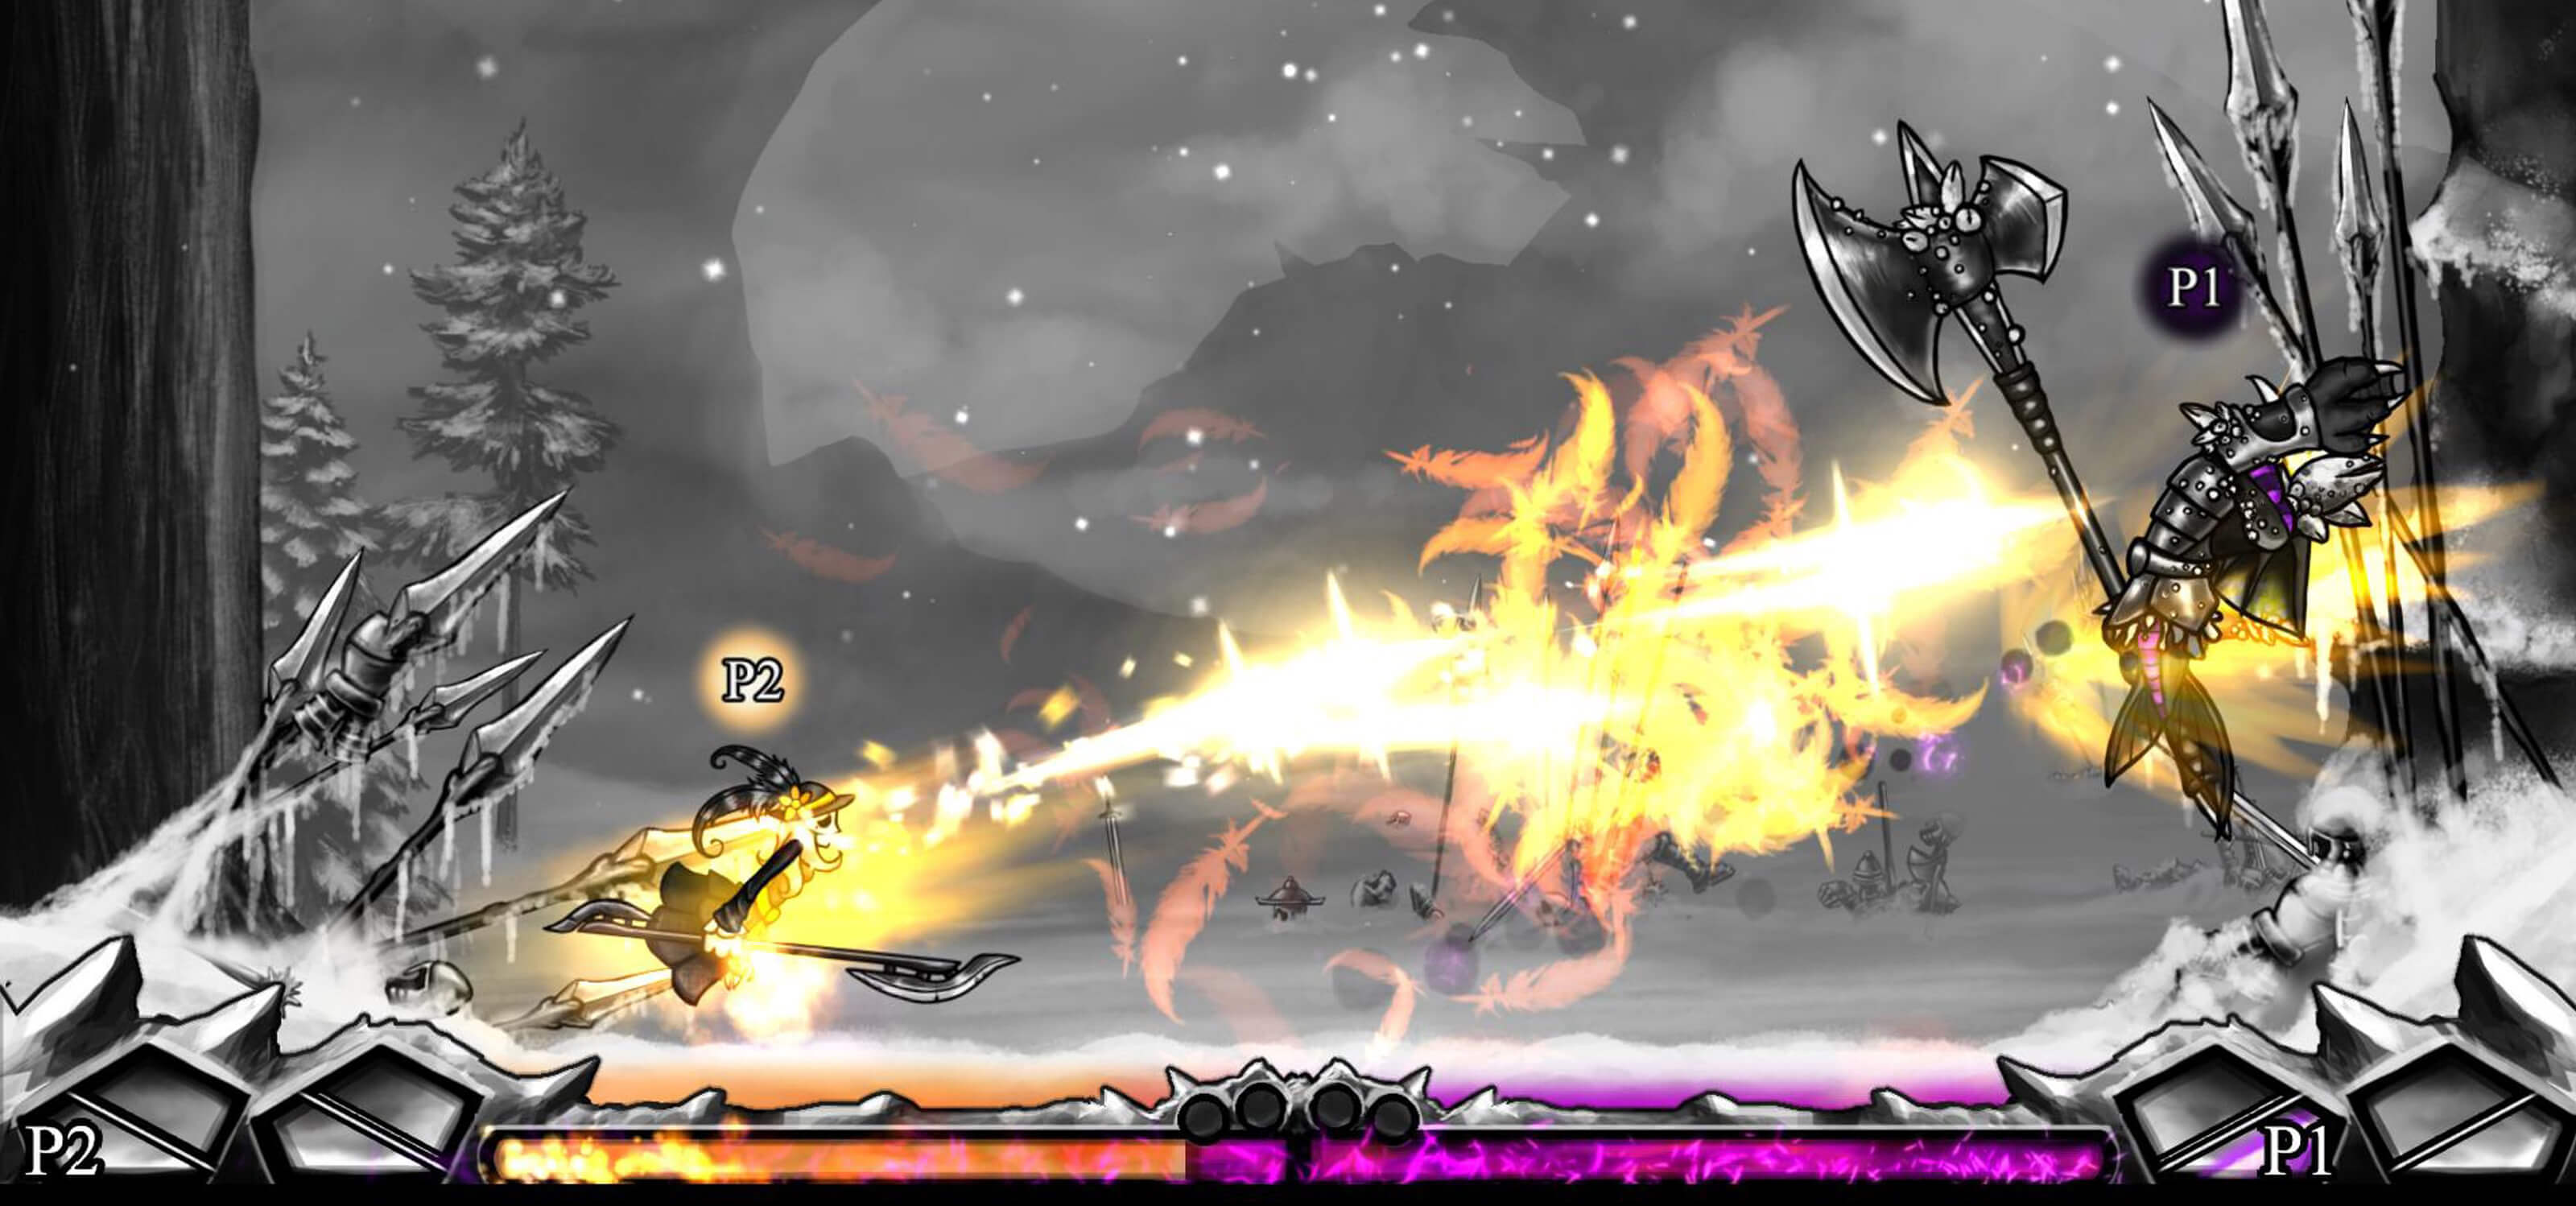 Screenshot of a battle from DigiPen student game Frozen Masquerade